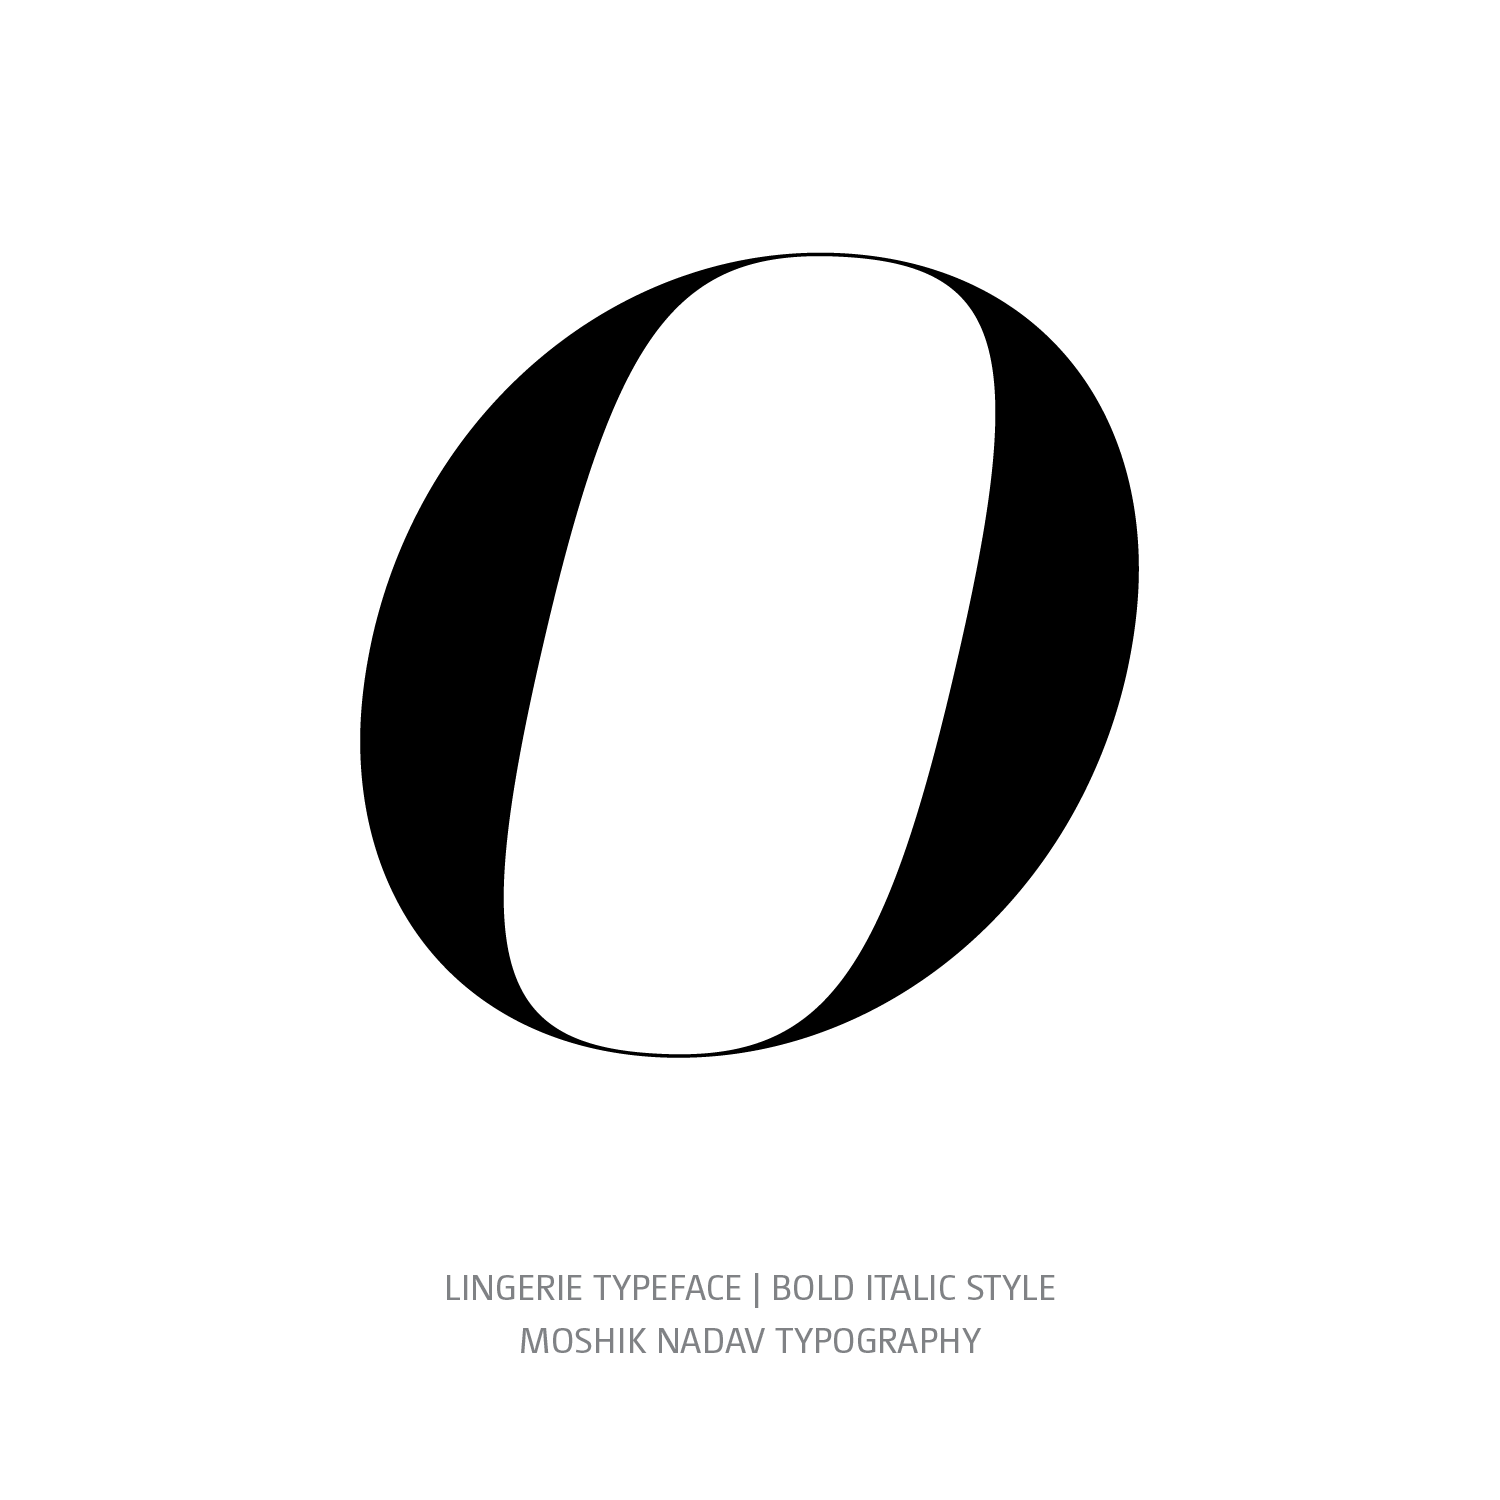 Lingerie Typeface Bold Italic O